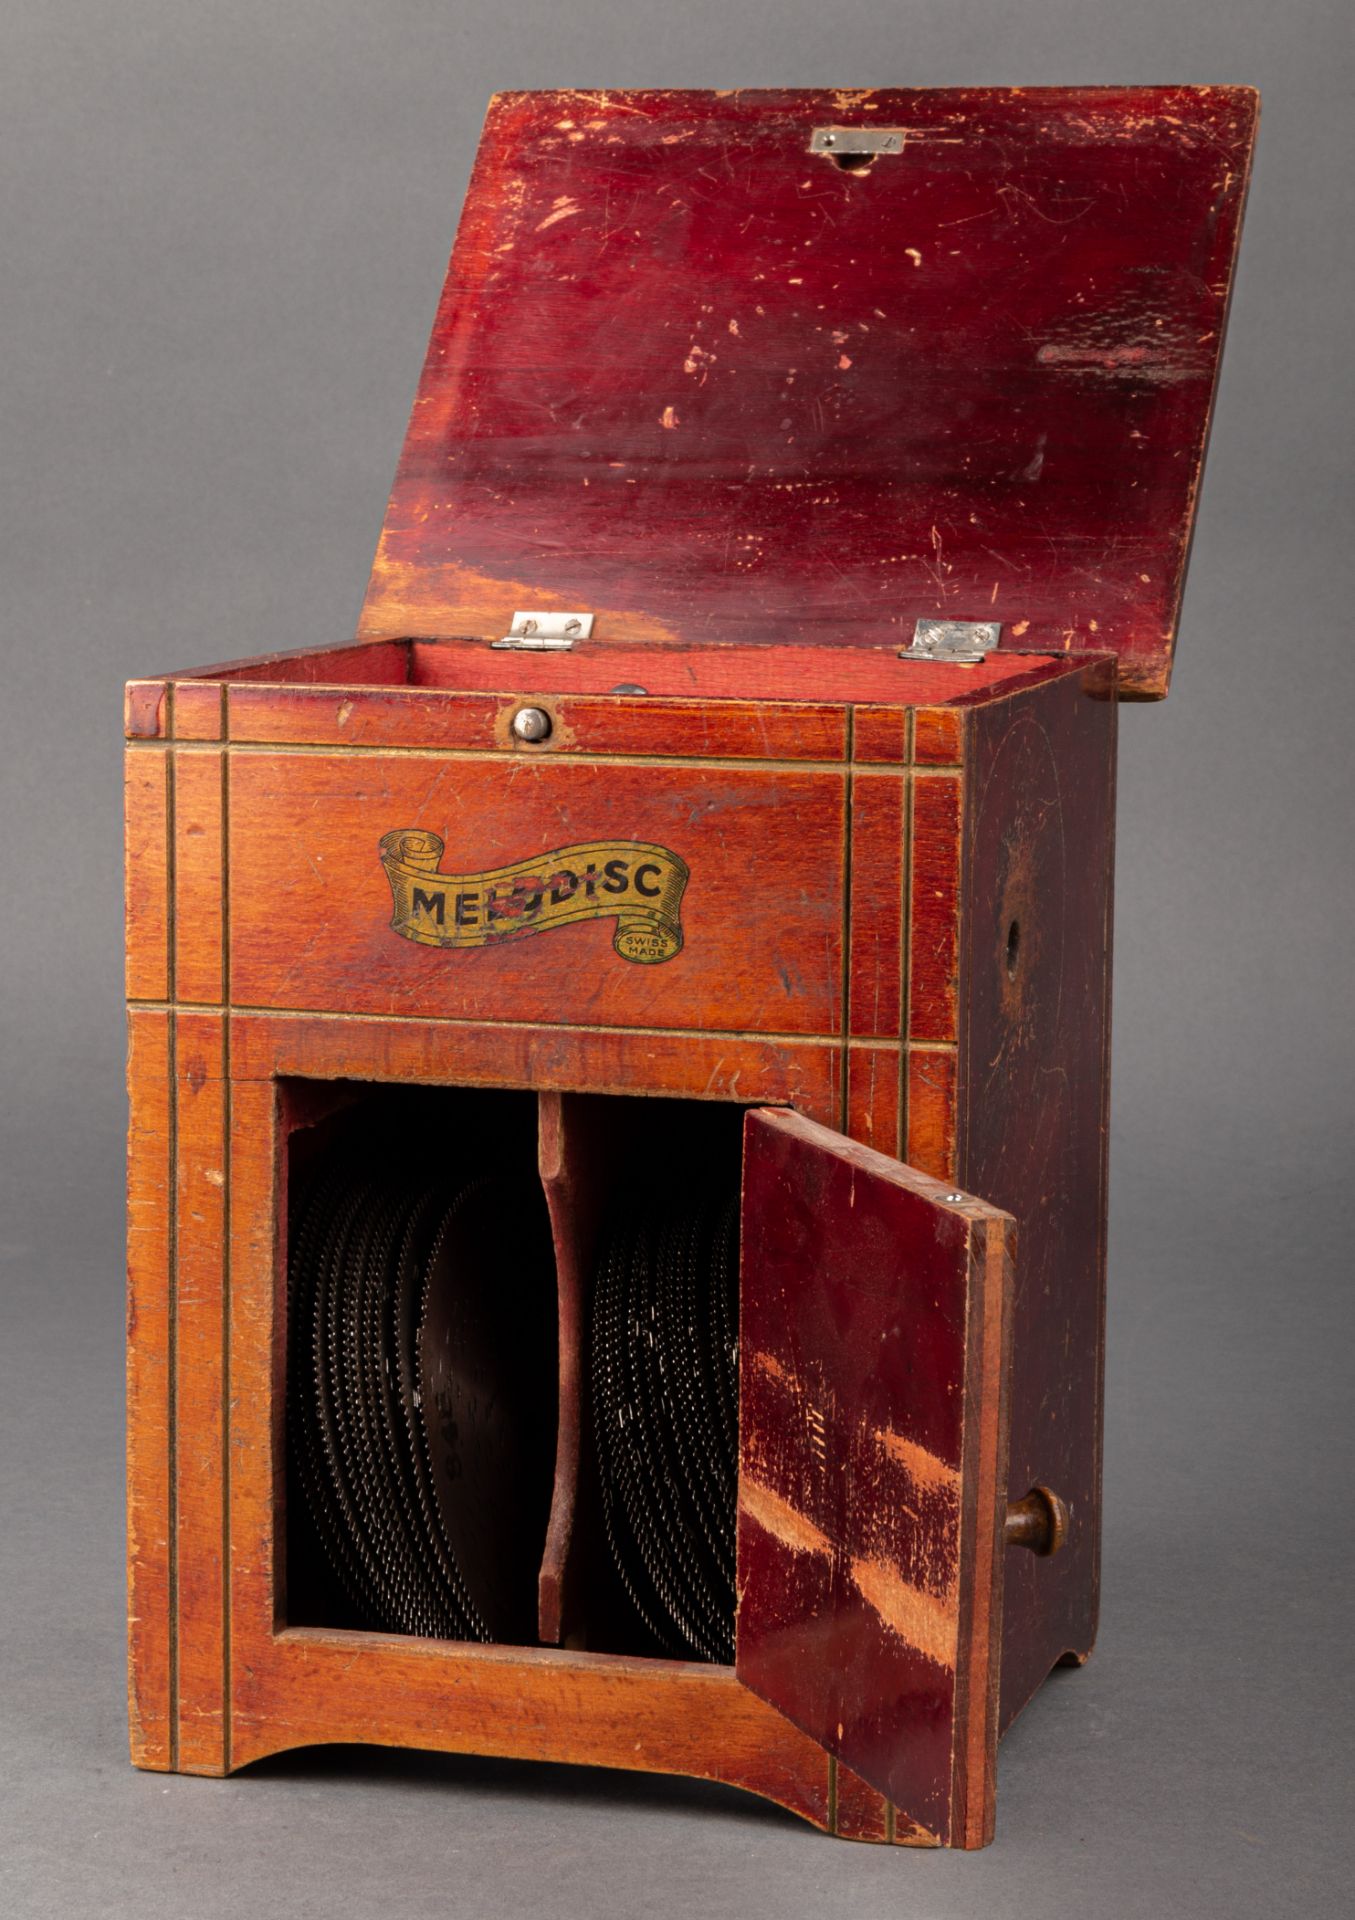 Lochplatten Spieluhr, Melodisc, um 1900 - Bild 2 aus 3